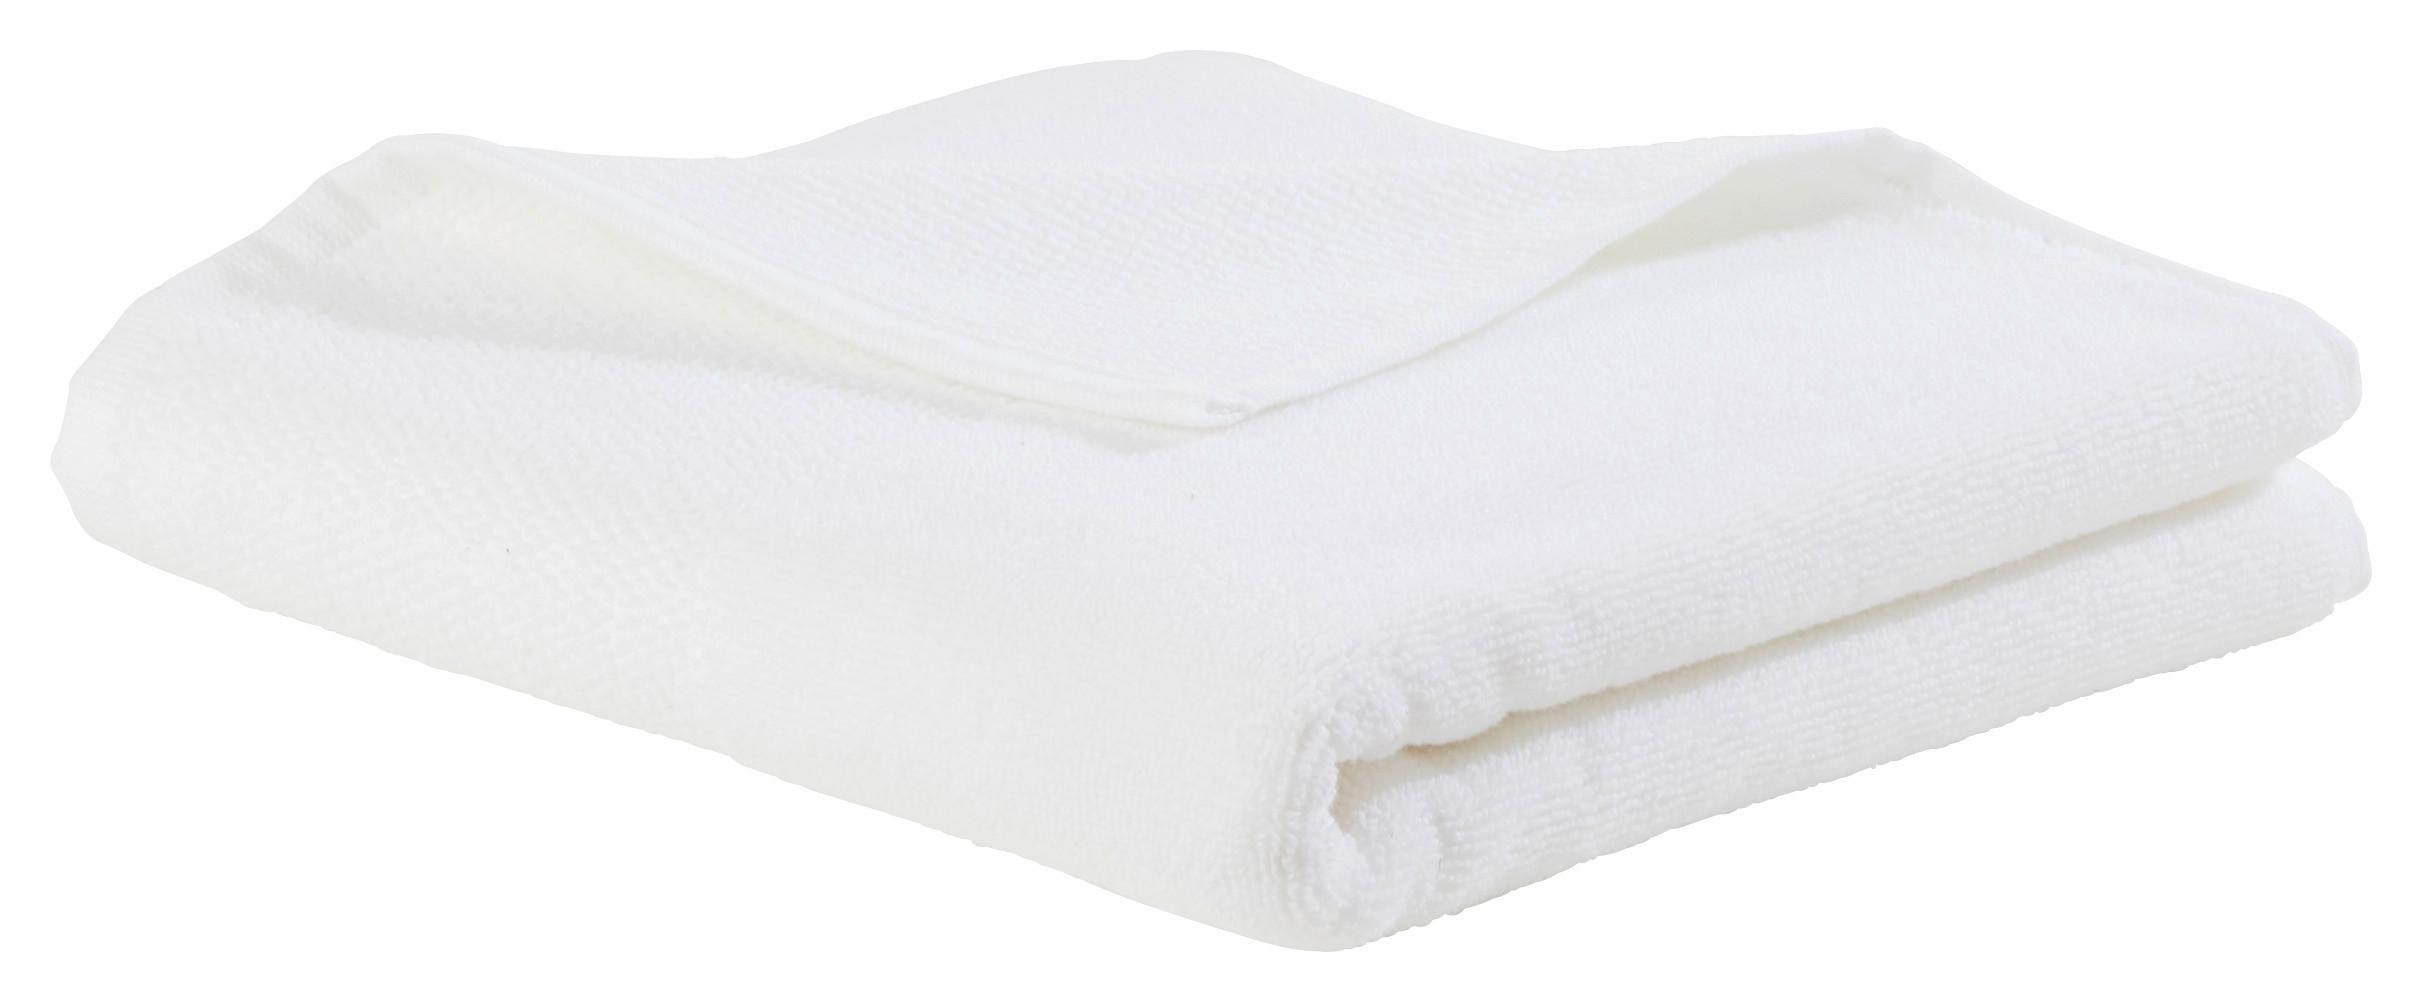 Handtuch Olivia in Weiß ca. 50x100cm - Weiss, Konventionell, Textil (50/100cm) - Premium Living